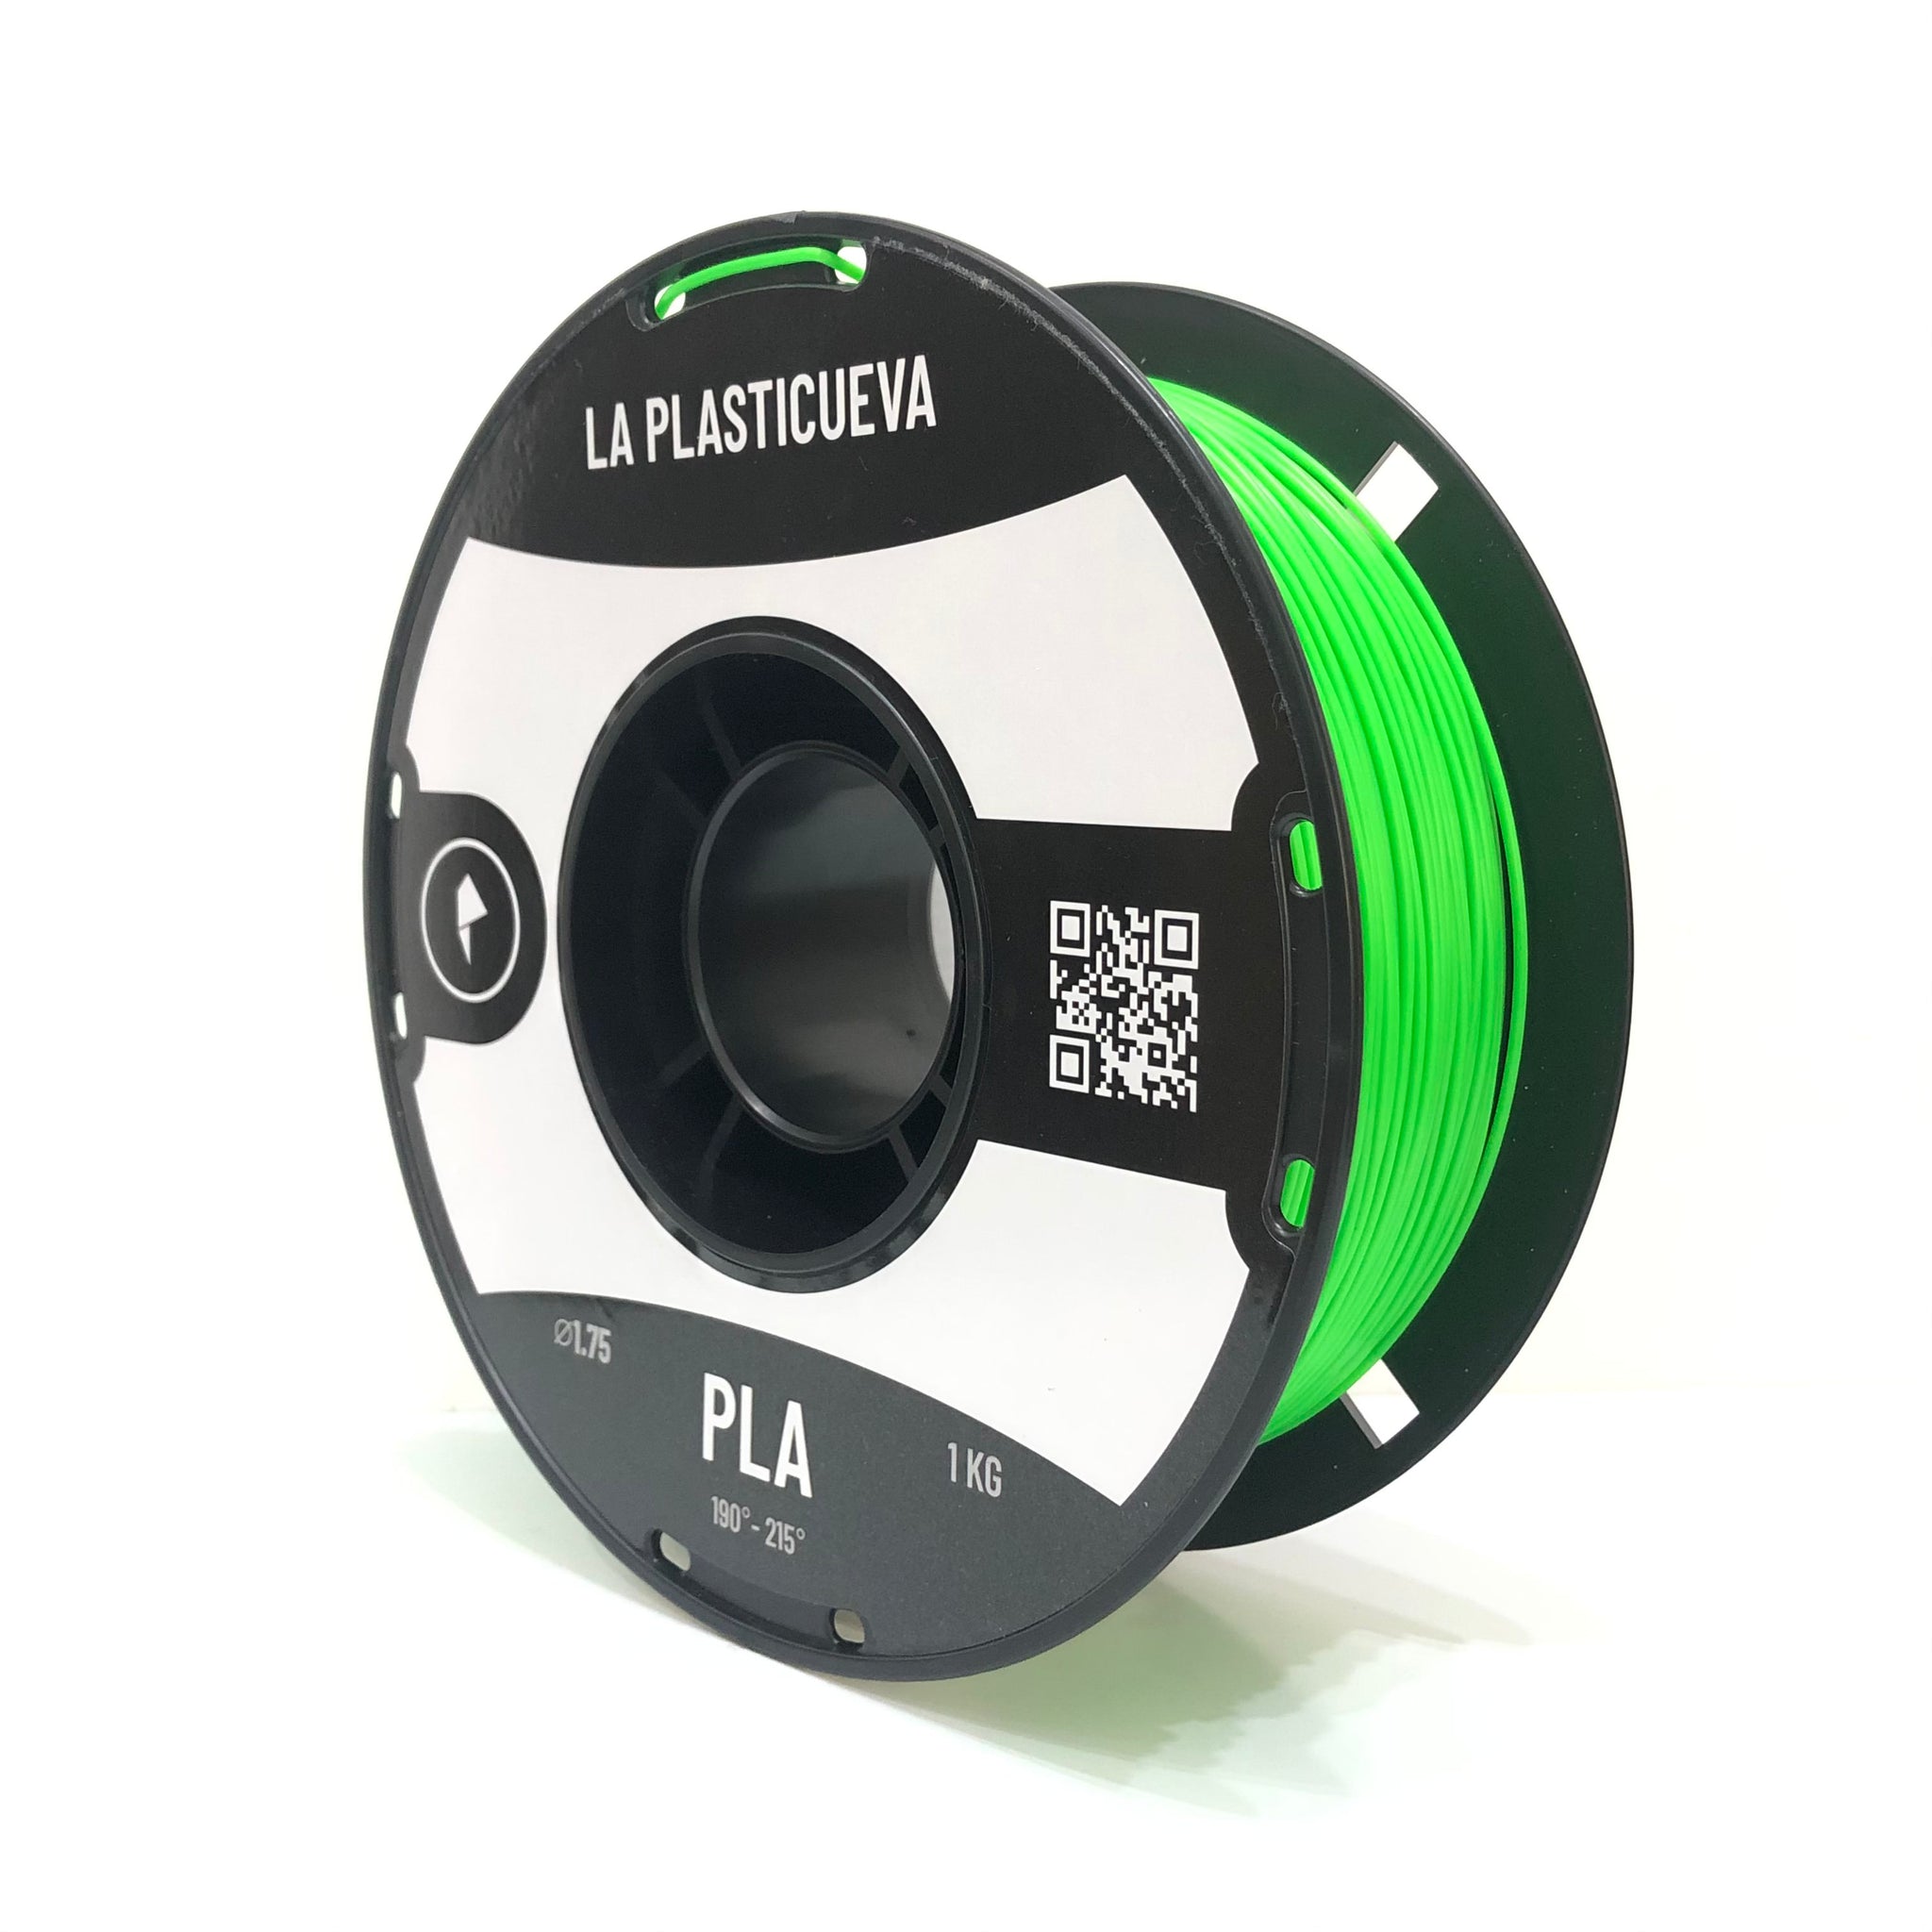 PLA Verde Fluo - Insumos para impresión 3D - La Plasticueva